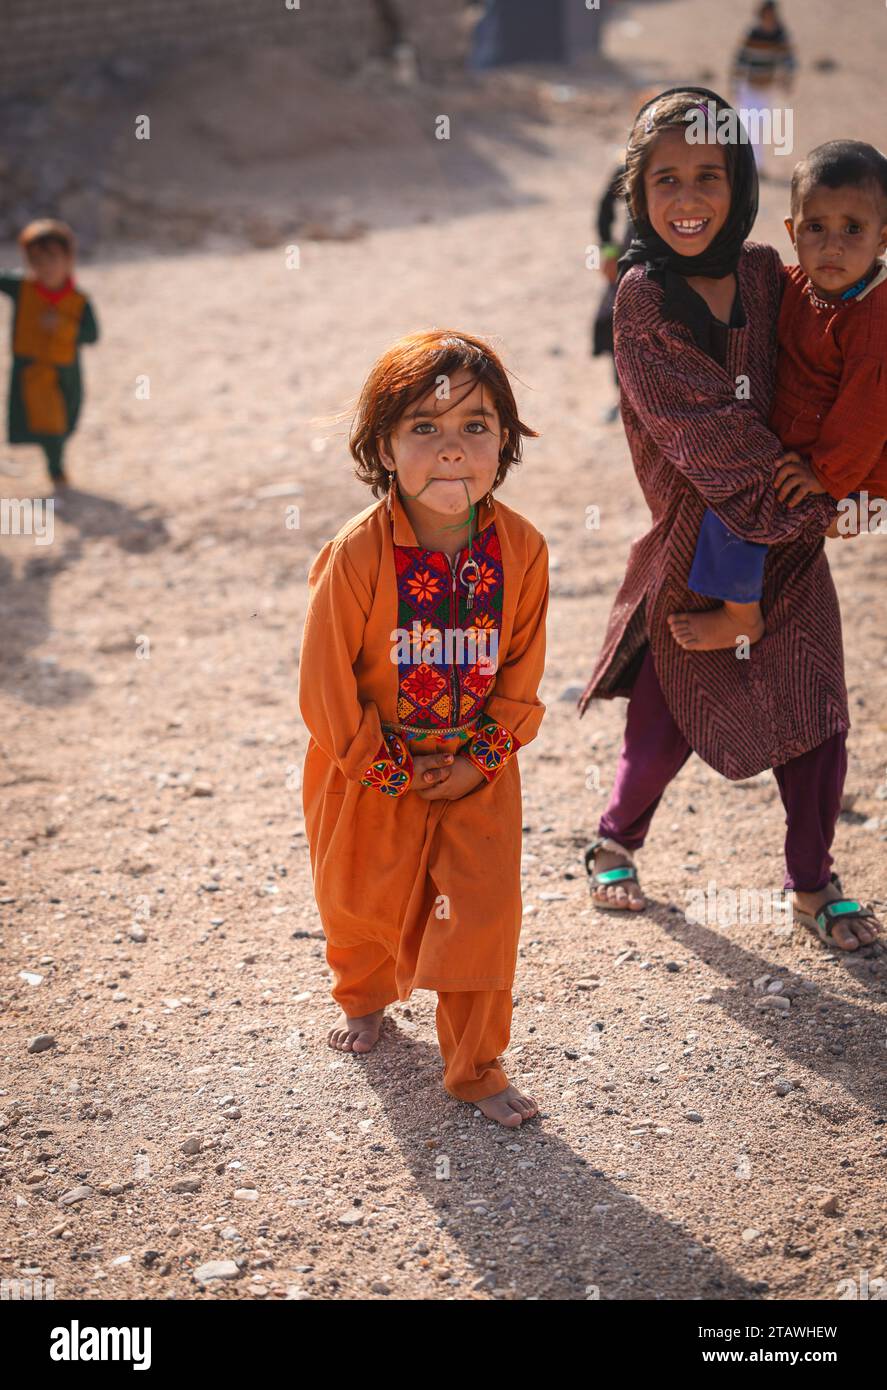 Heureuse jeune fille afghane avec une tenue traditionnelle, souriante, regardant la caméra. Banque D'Images